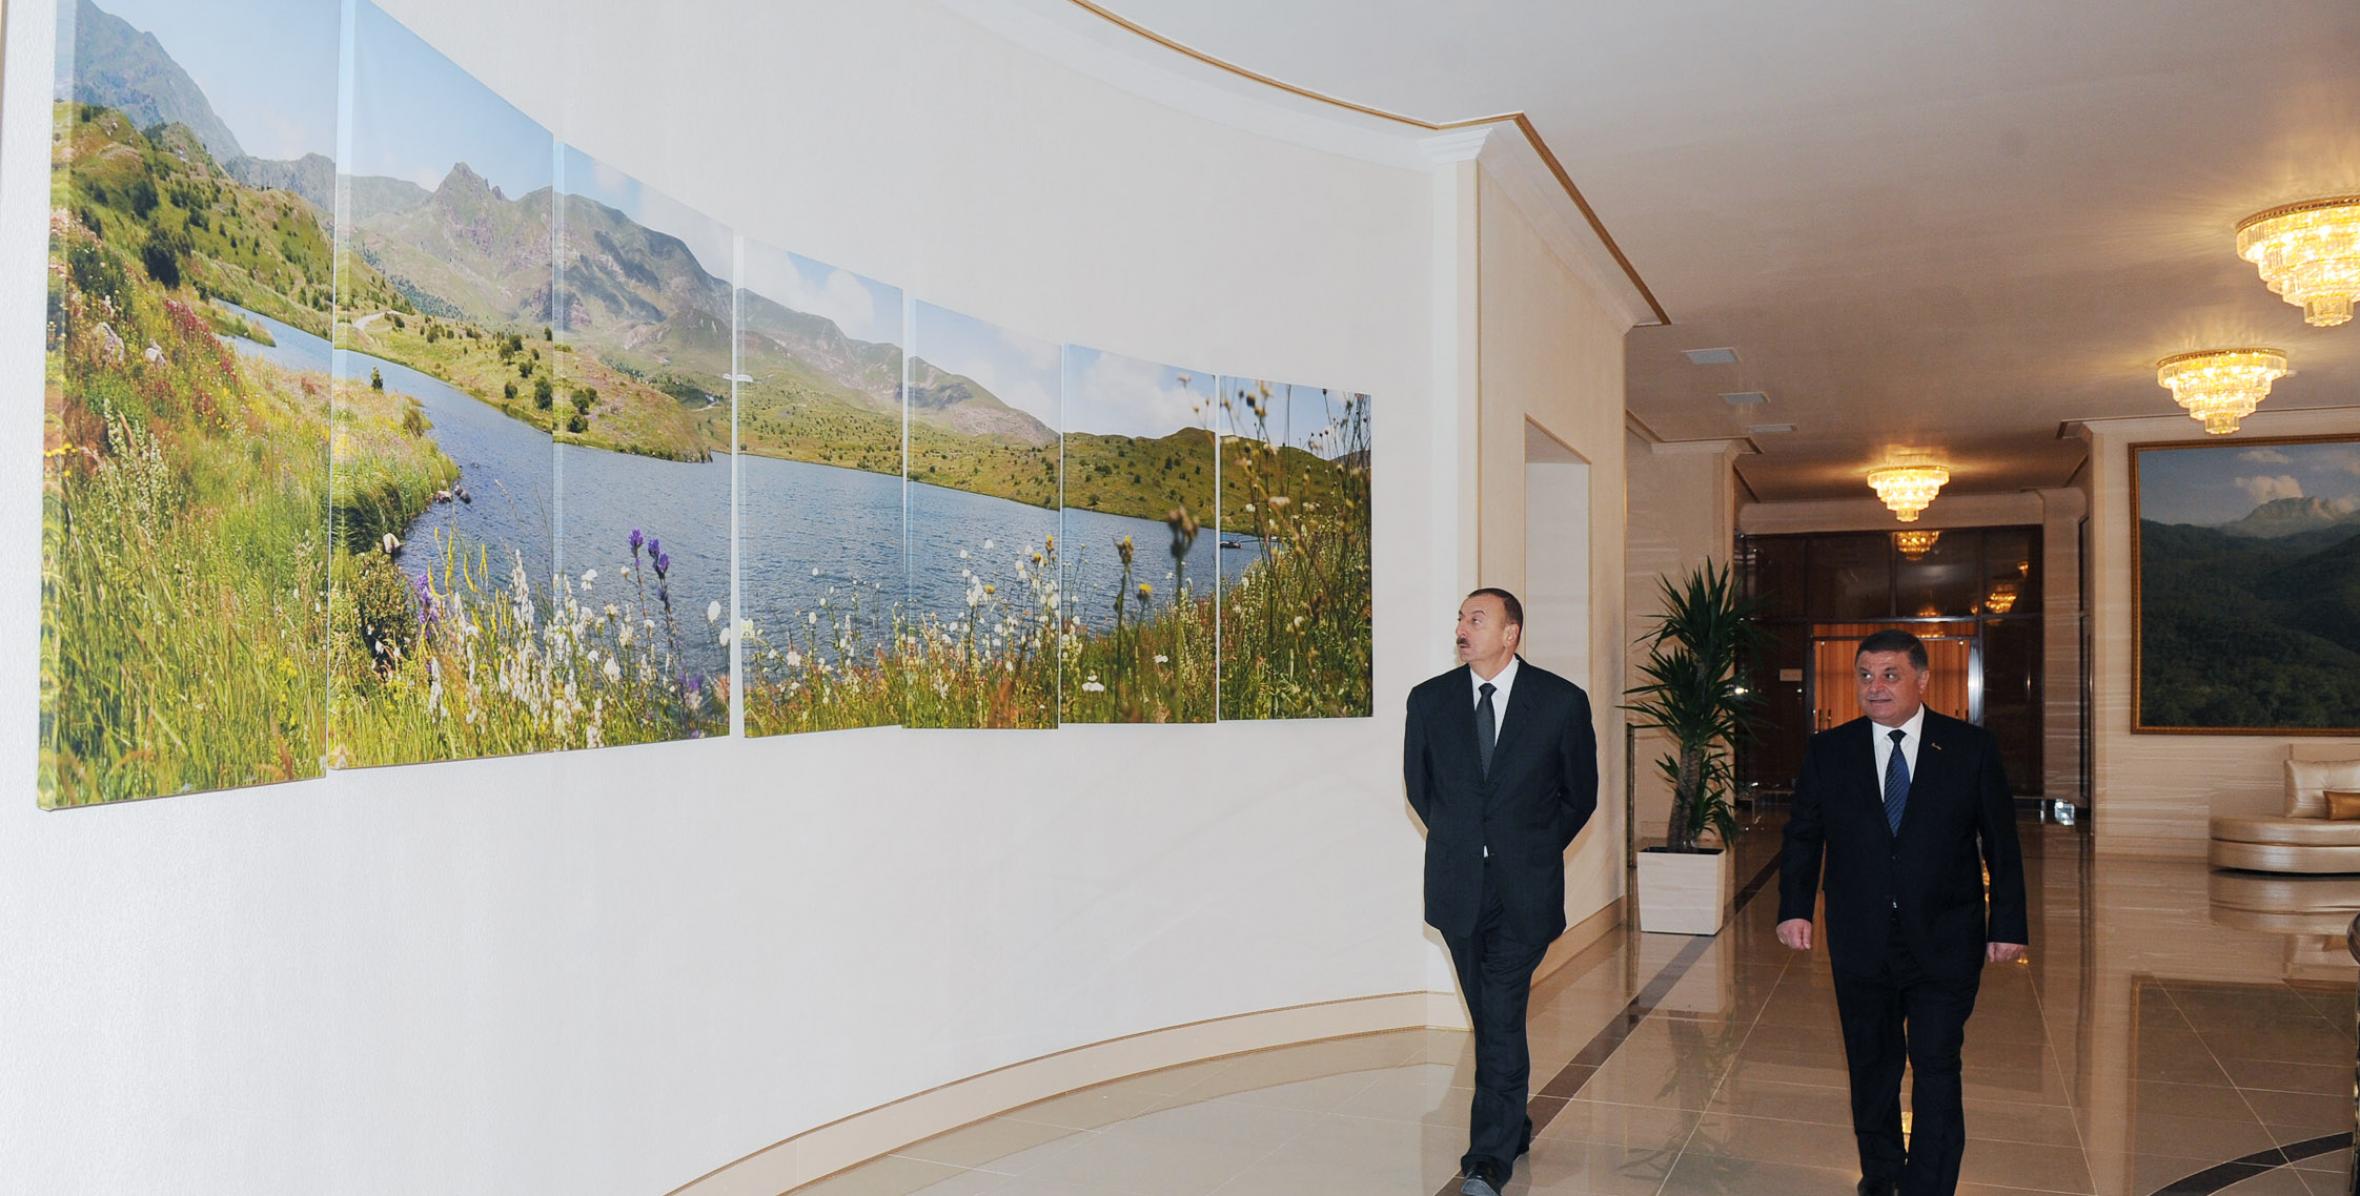 Ilham Aliyev attended the opening of the Heydar Aliyev Center in Goygol